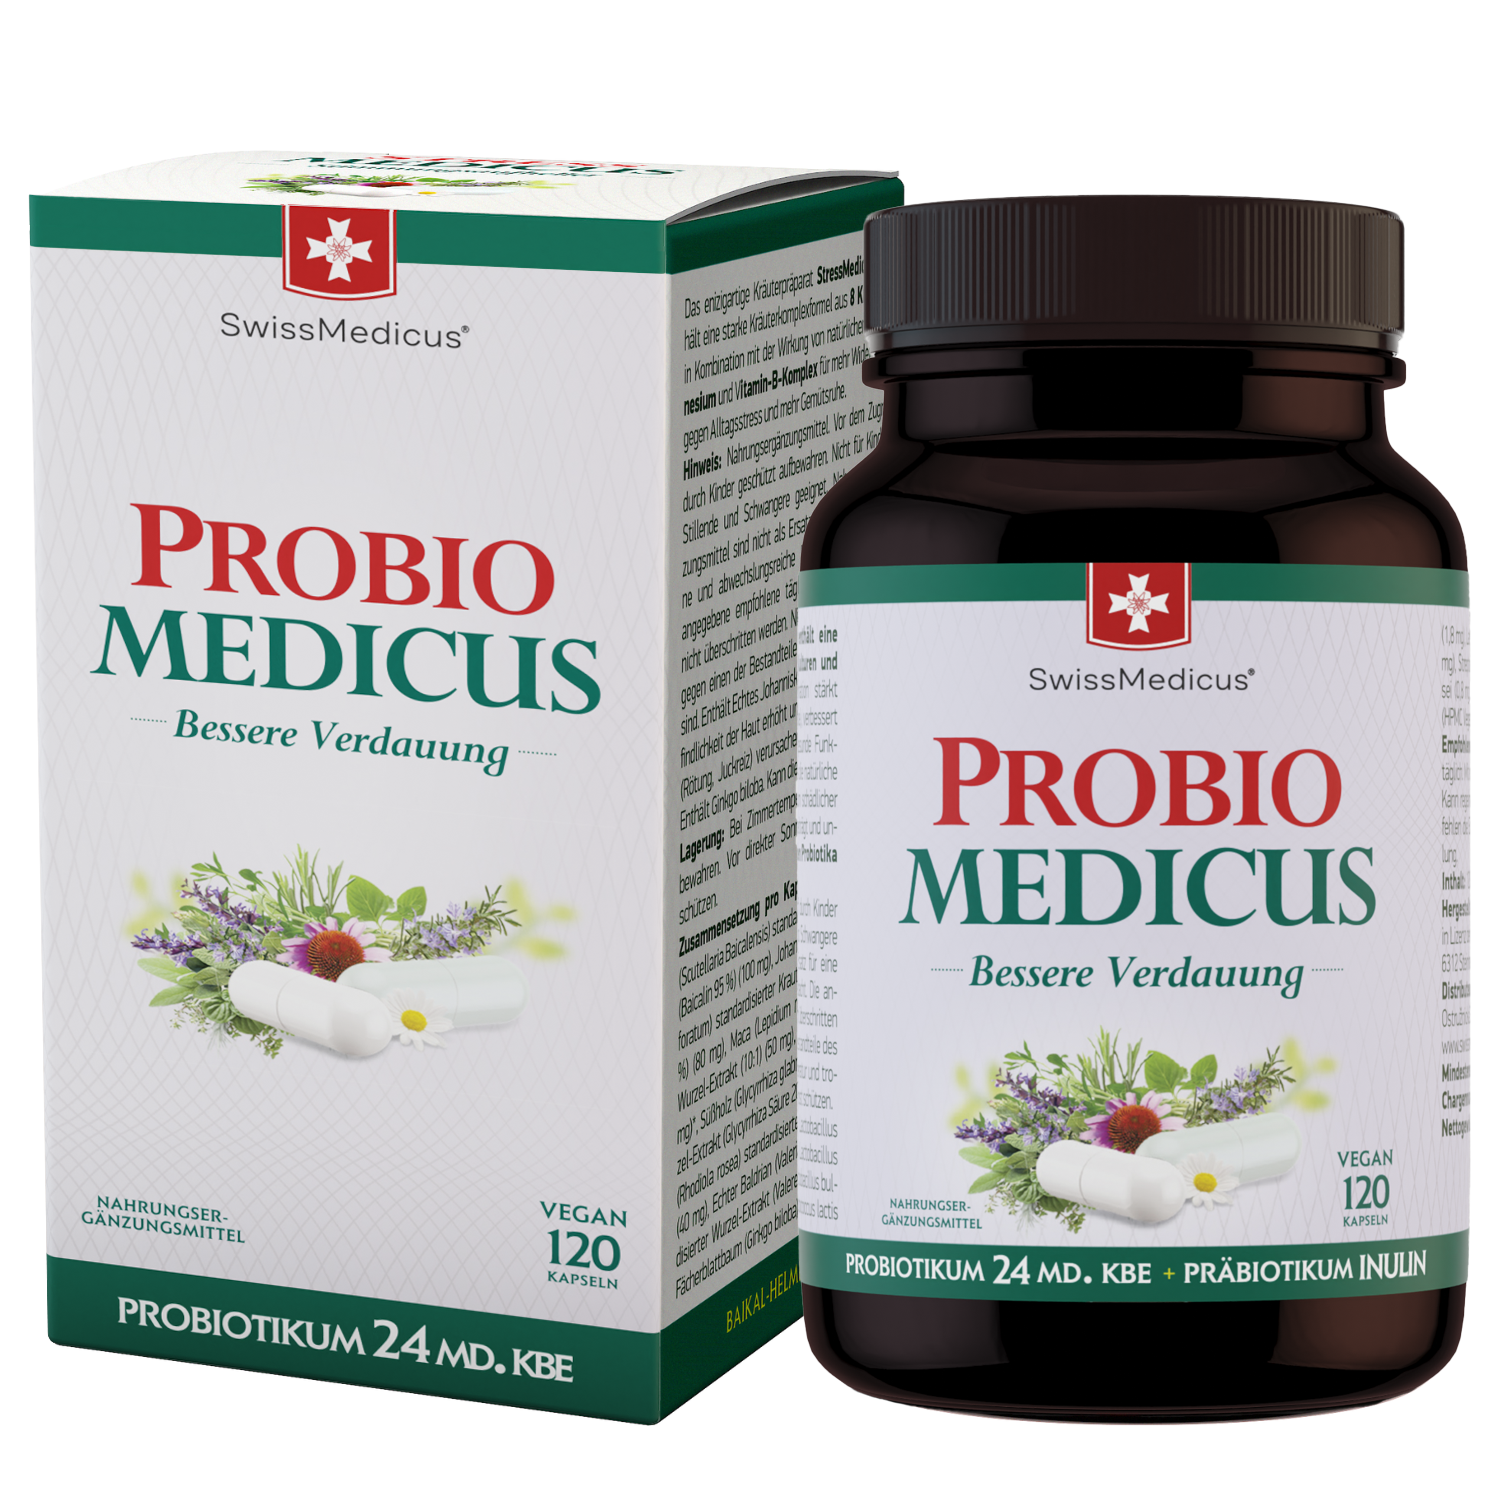 ProbioMedicus 120 capsules